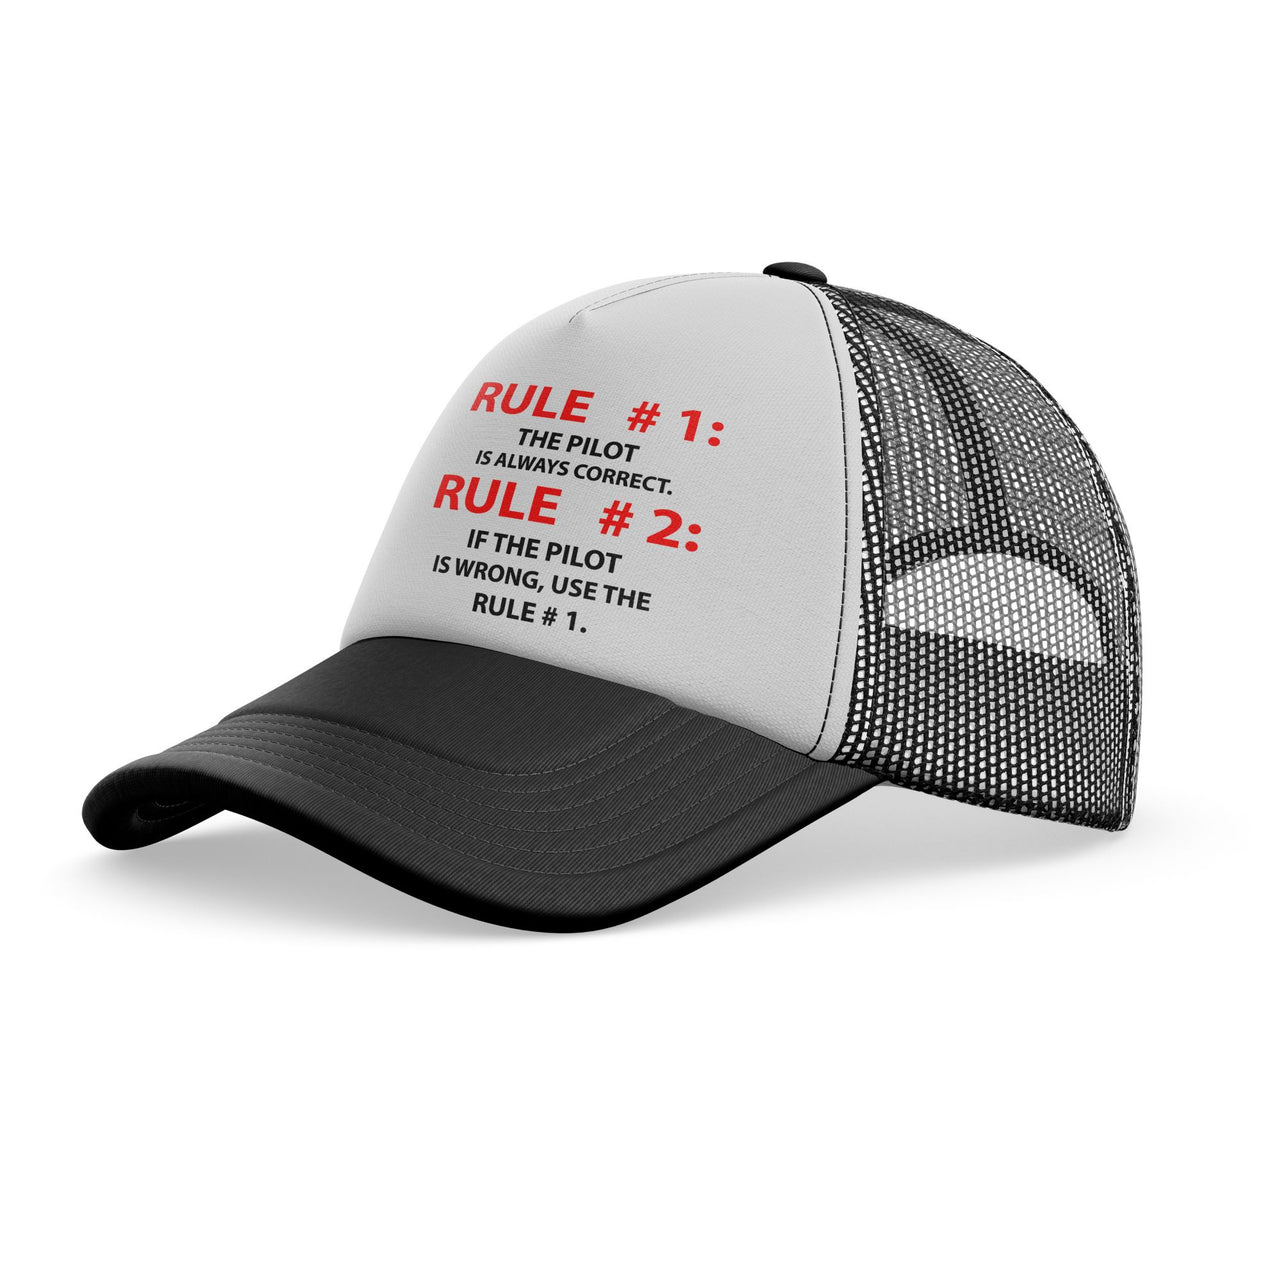 Rule 1 - Pilot is Always Correct Designed Trucker Caps & Hats